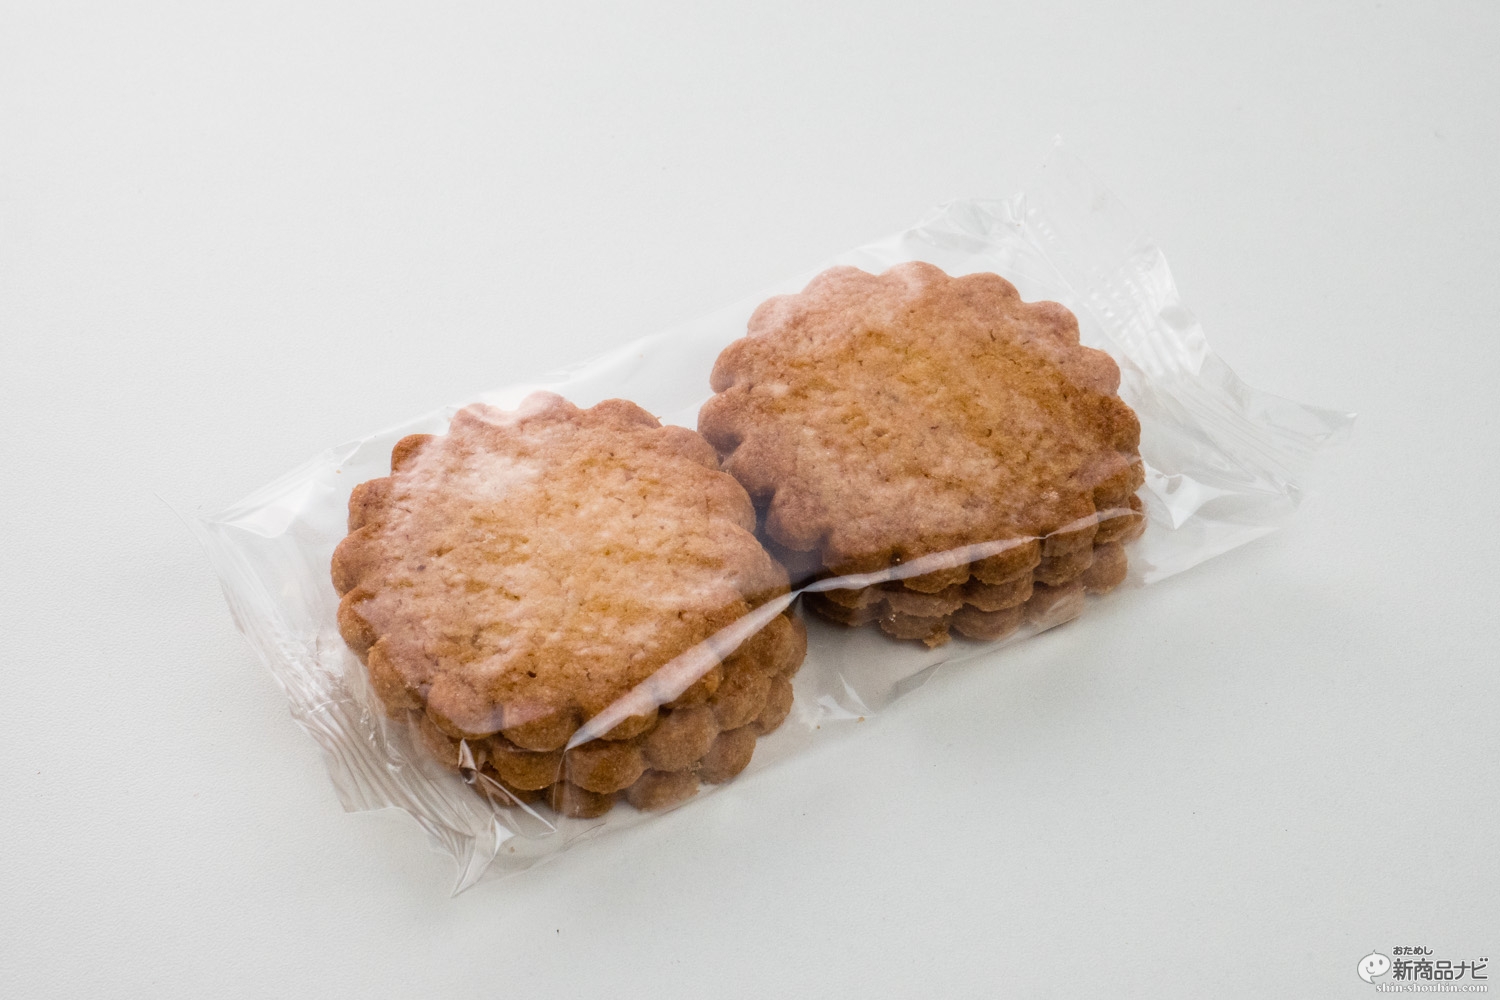 おためし新商品ナビ Blog Archive おフランス土産の定番 モンサンミッシェルガレットクッキー をコンビニで発見 トドメのオレンジはちみつに衝撃が走った